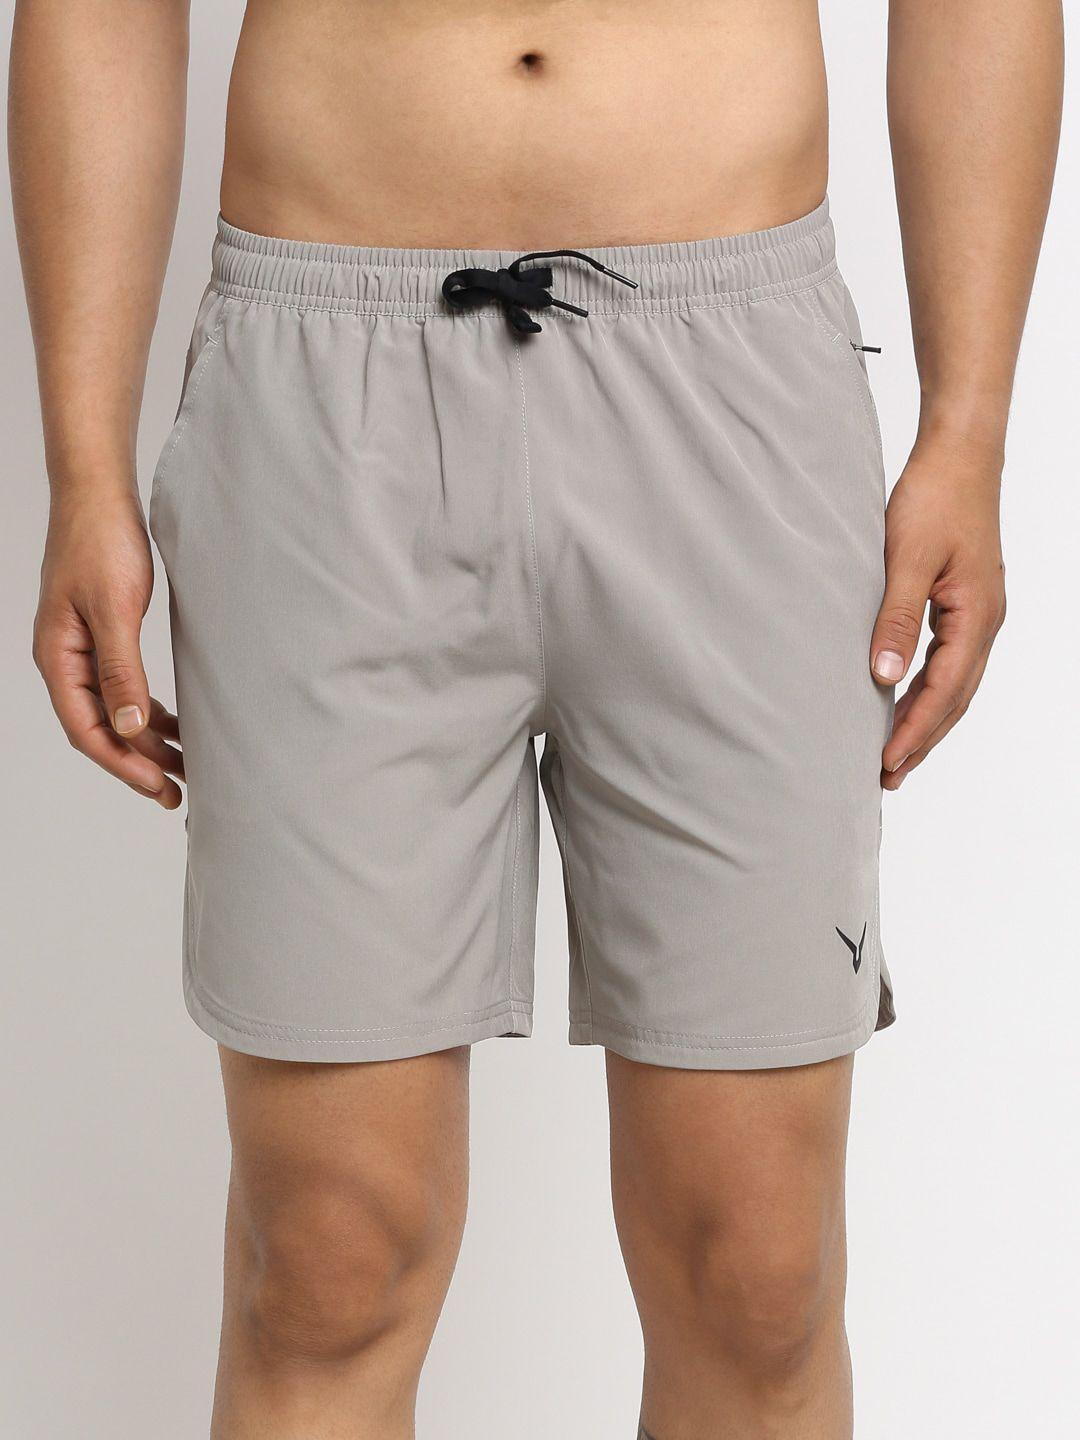 invincible men grey mid-rise sports shorts